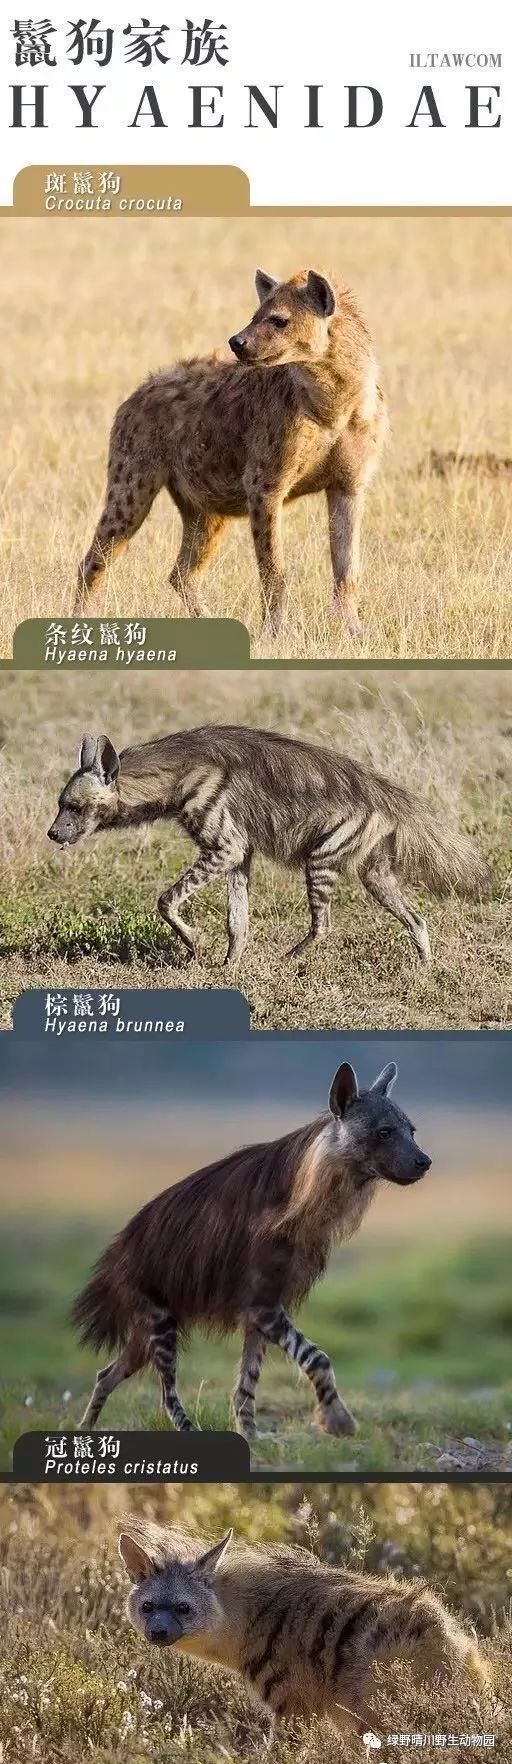 斑鬣狗体重图片